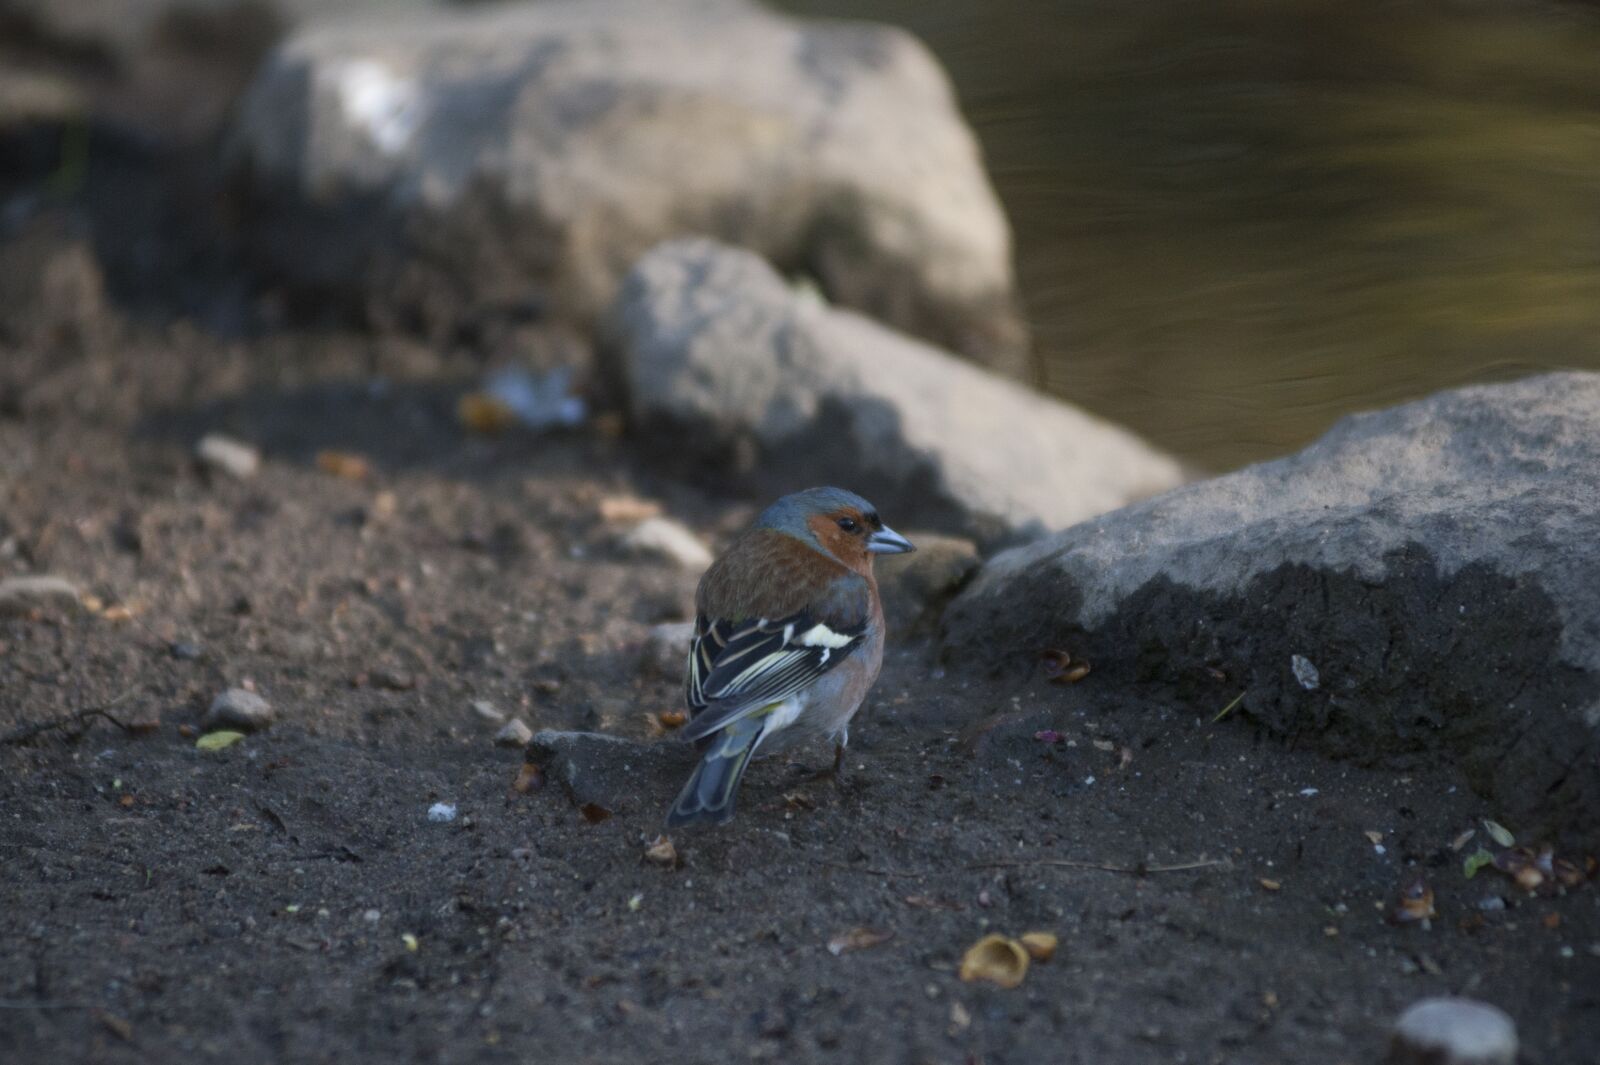 Nikon D700 sample photo. Sparrow, bird, nature photography